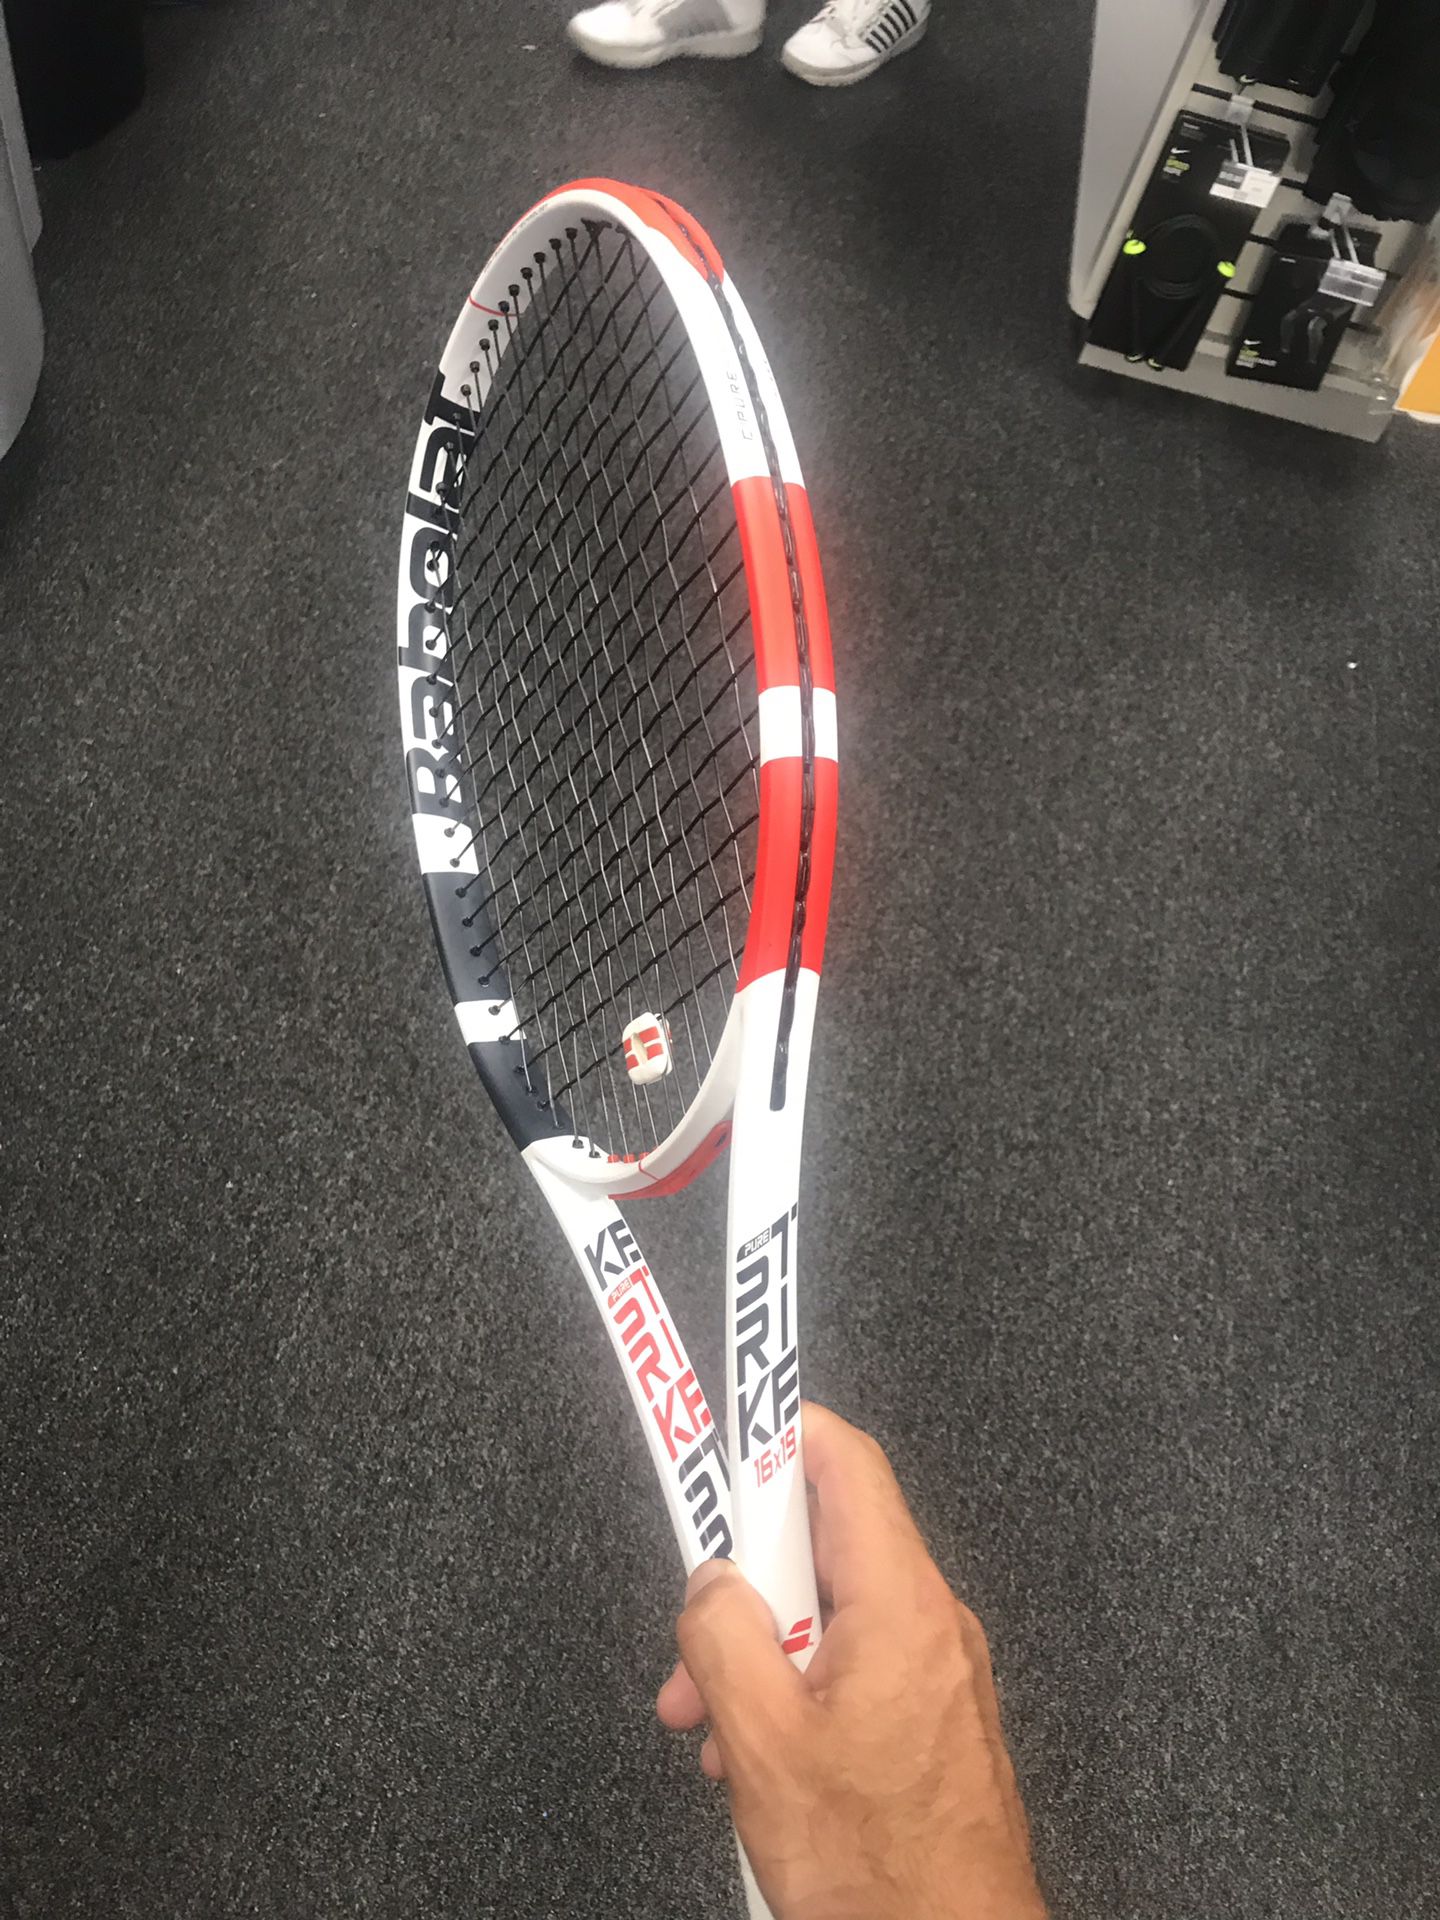 New racket Babolat Pure strike 2019